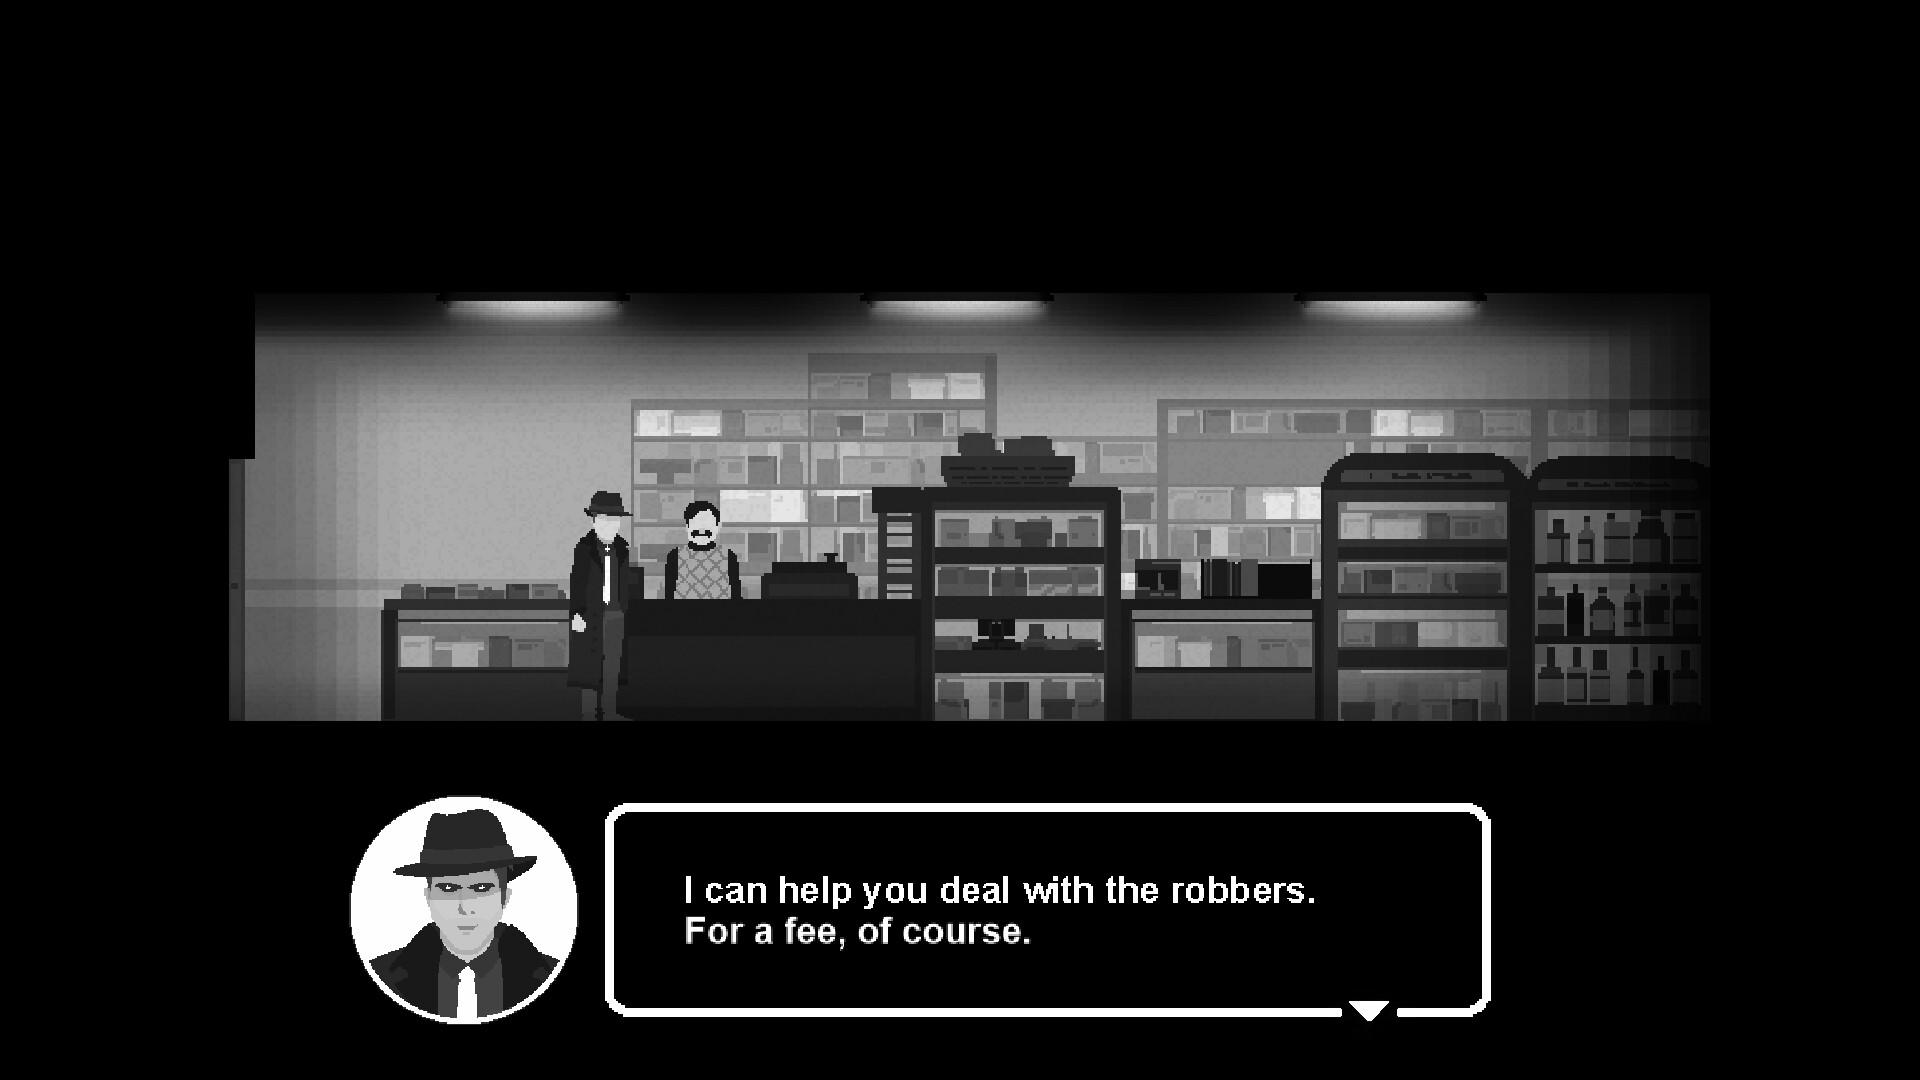 Antidote city hall screenshot game